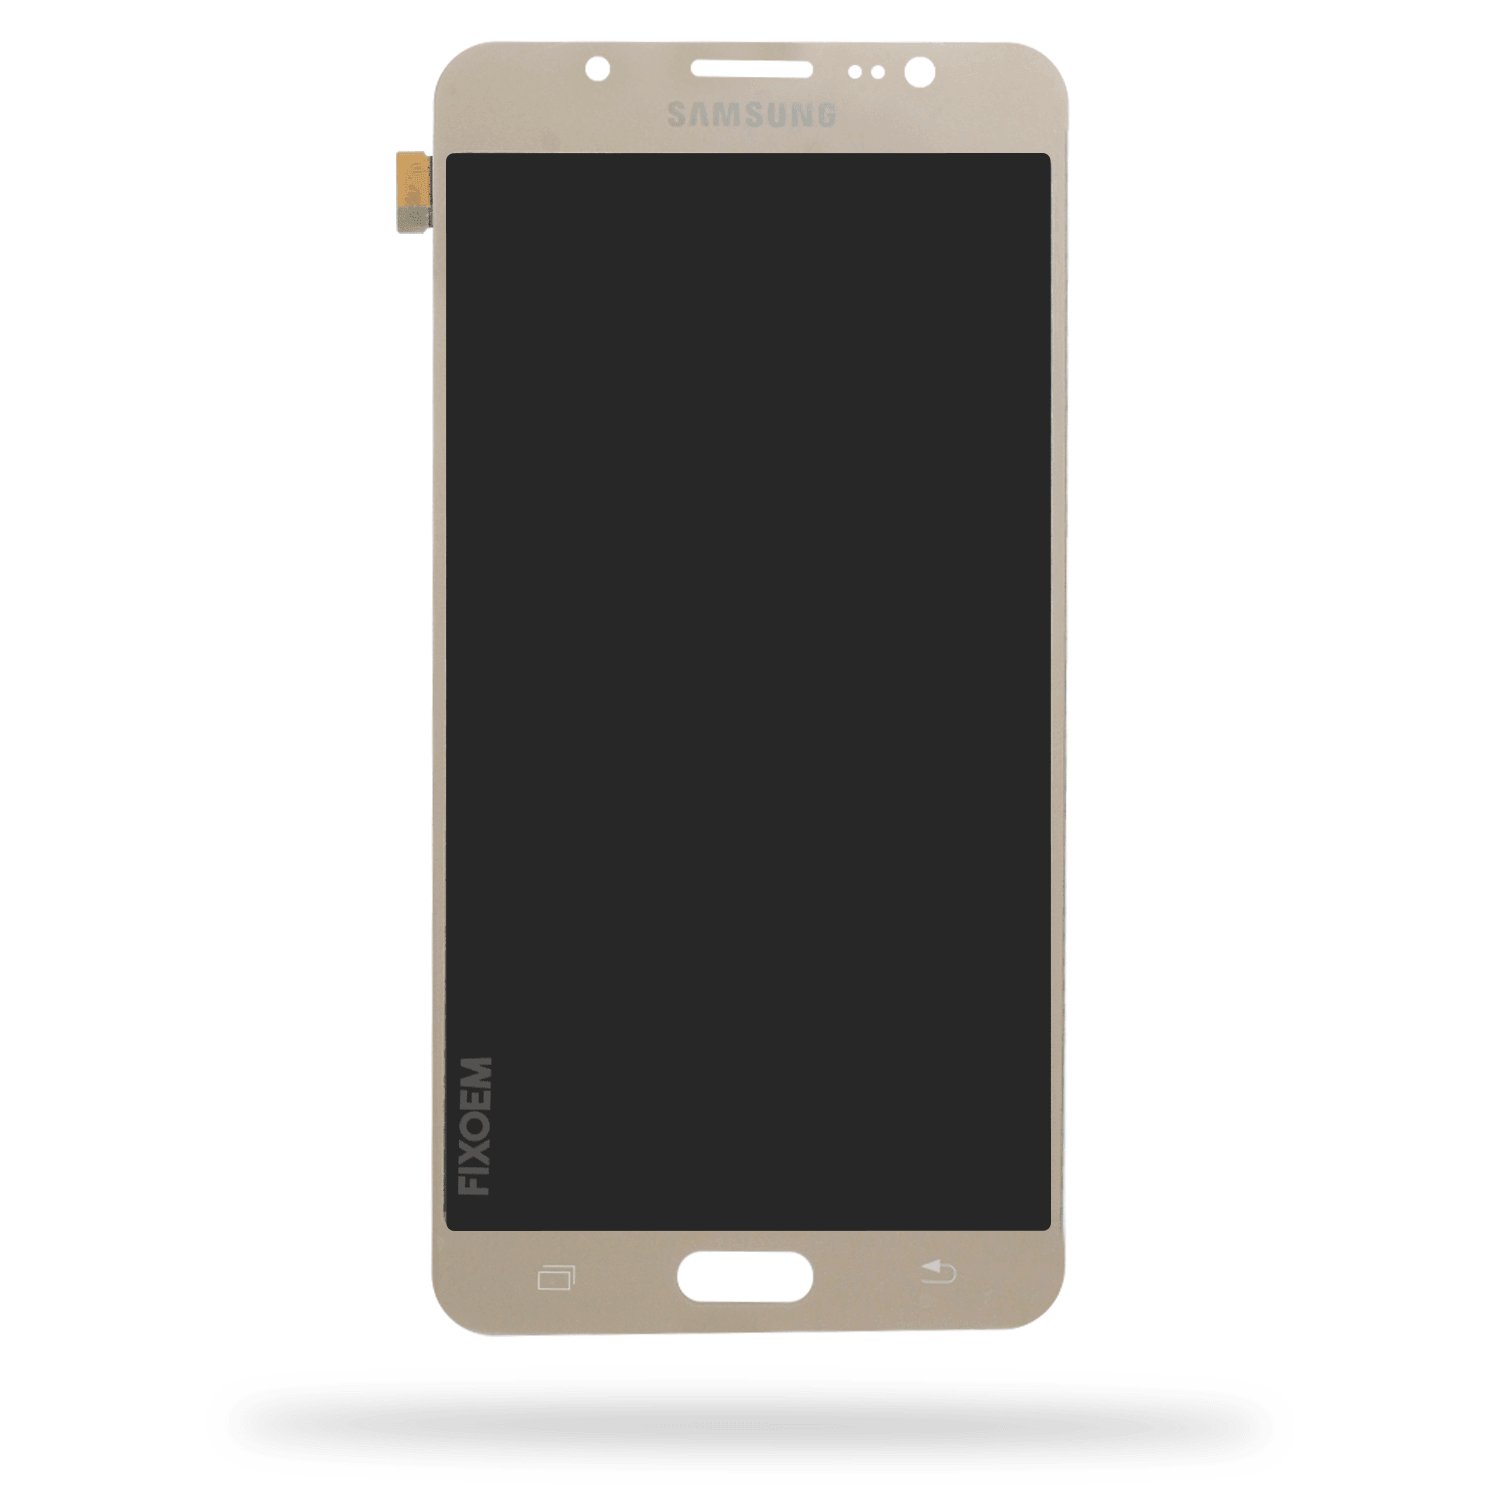 Display Samsung J7 Metal 2016 Oled Sm-J710m a solo $ 670.00 Refaccion y puestos celulares, refurbish y microelectronica.- FixOEM